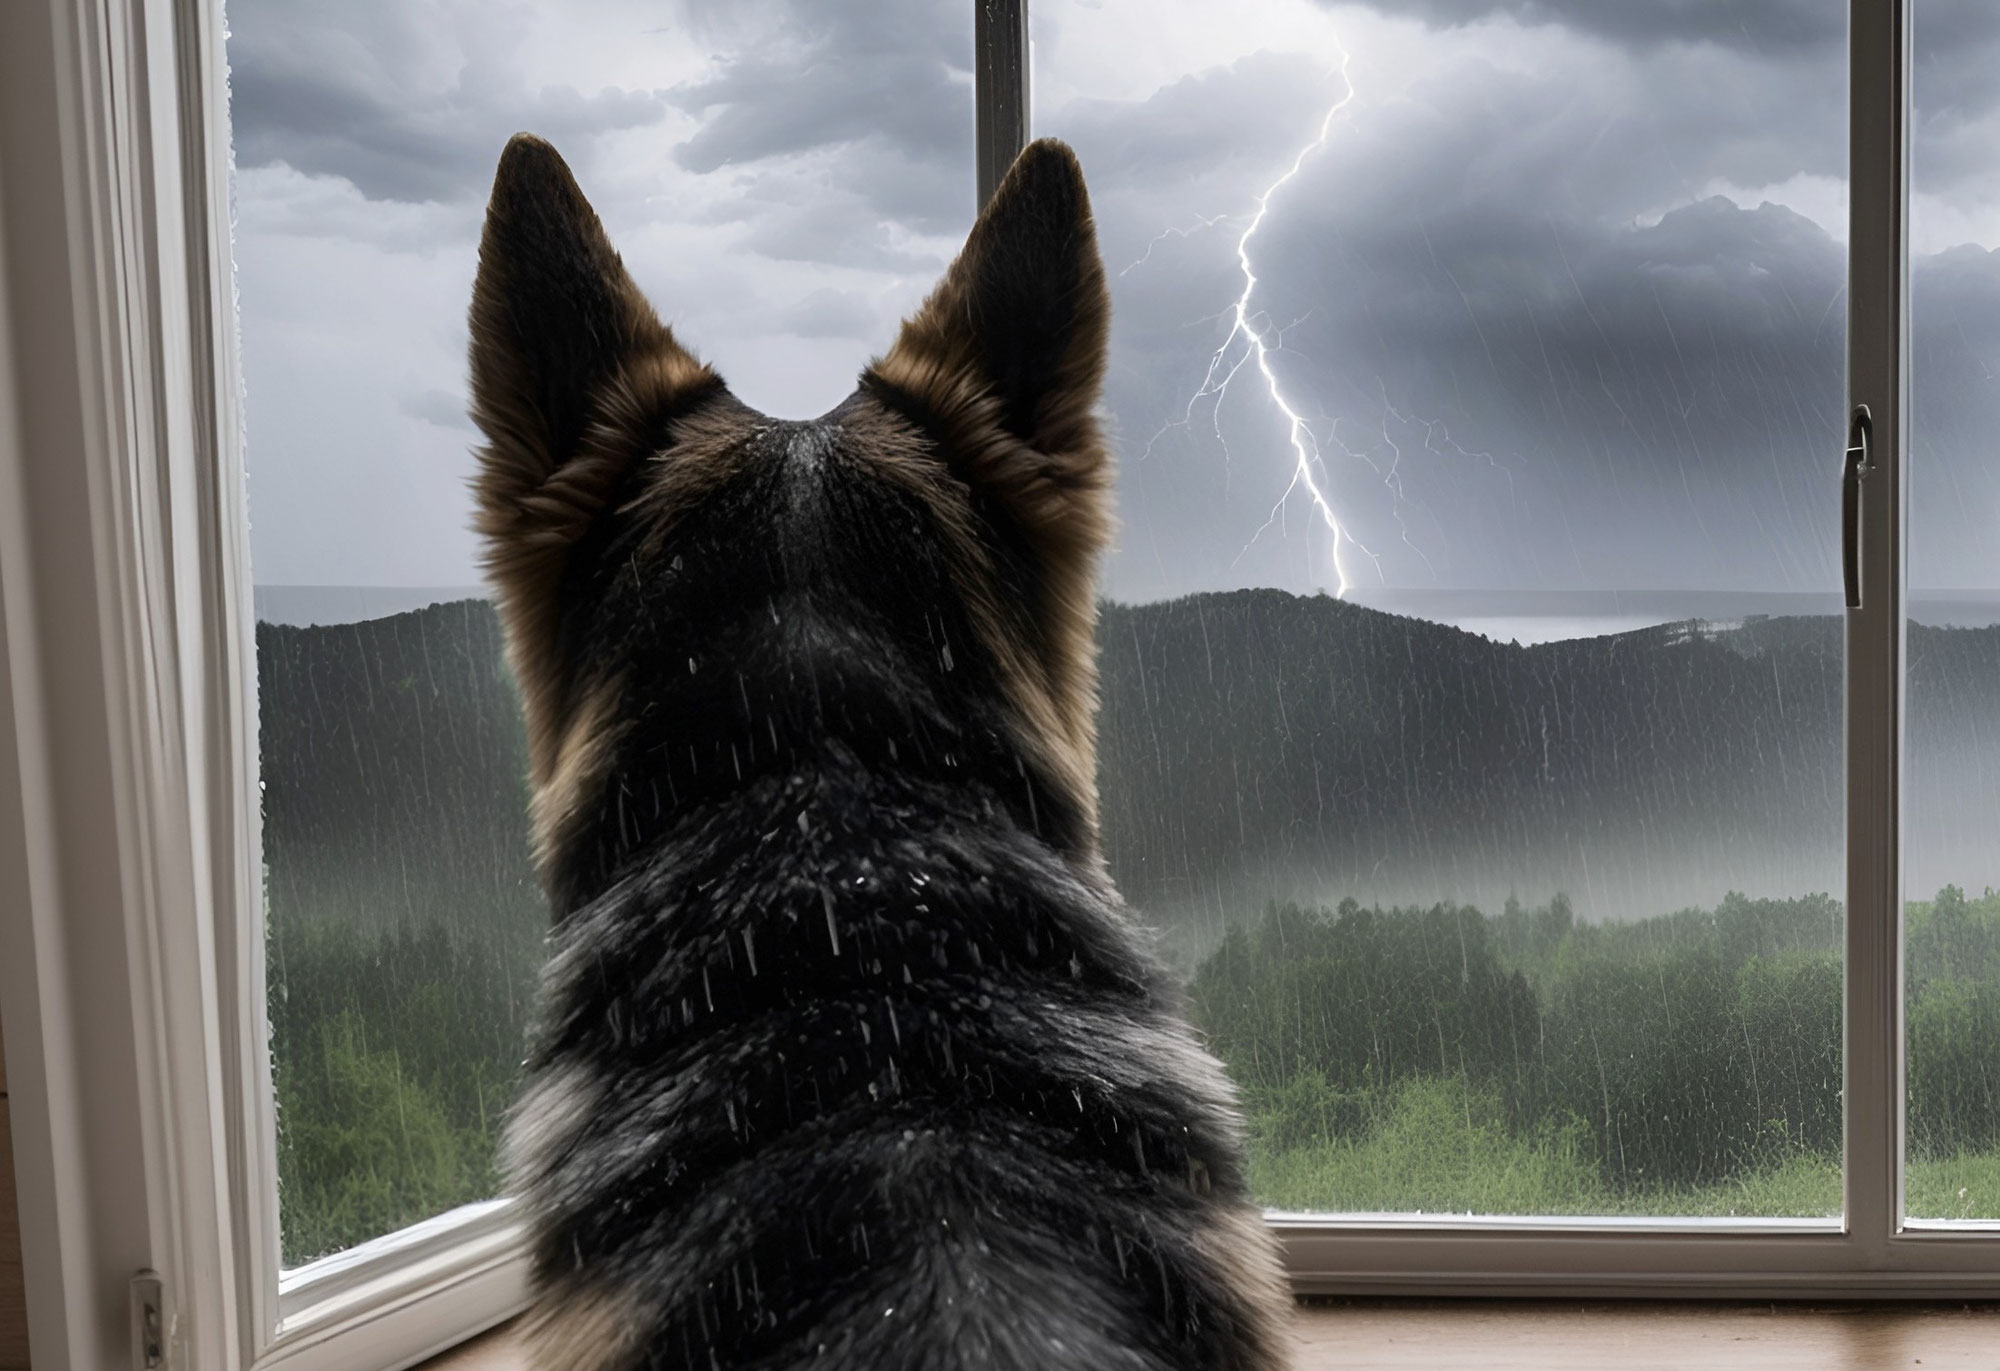 Pourquoi mon chien a t'il peur des orages, et peut on y remédier ?